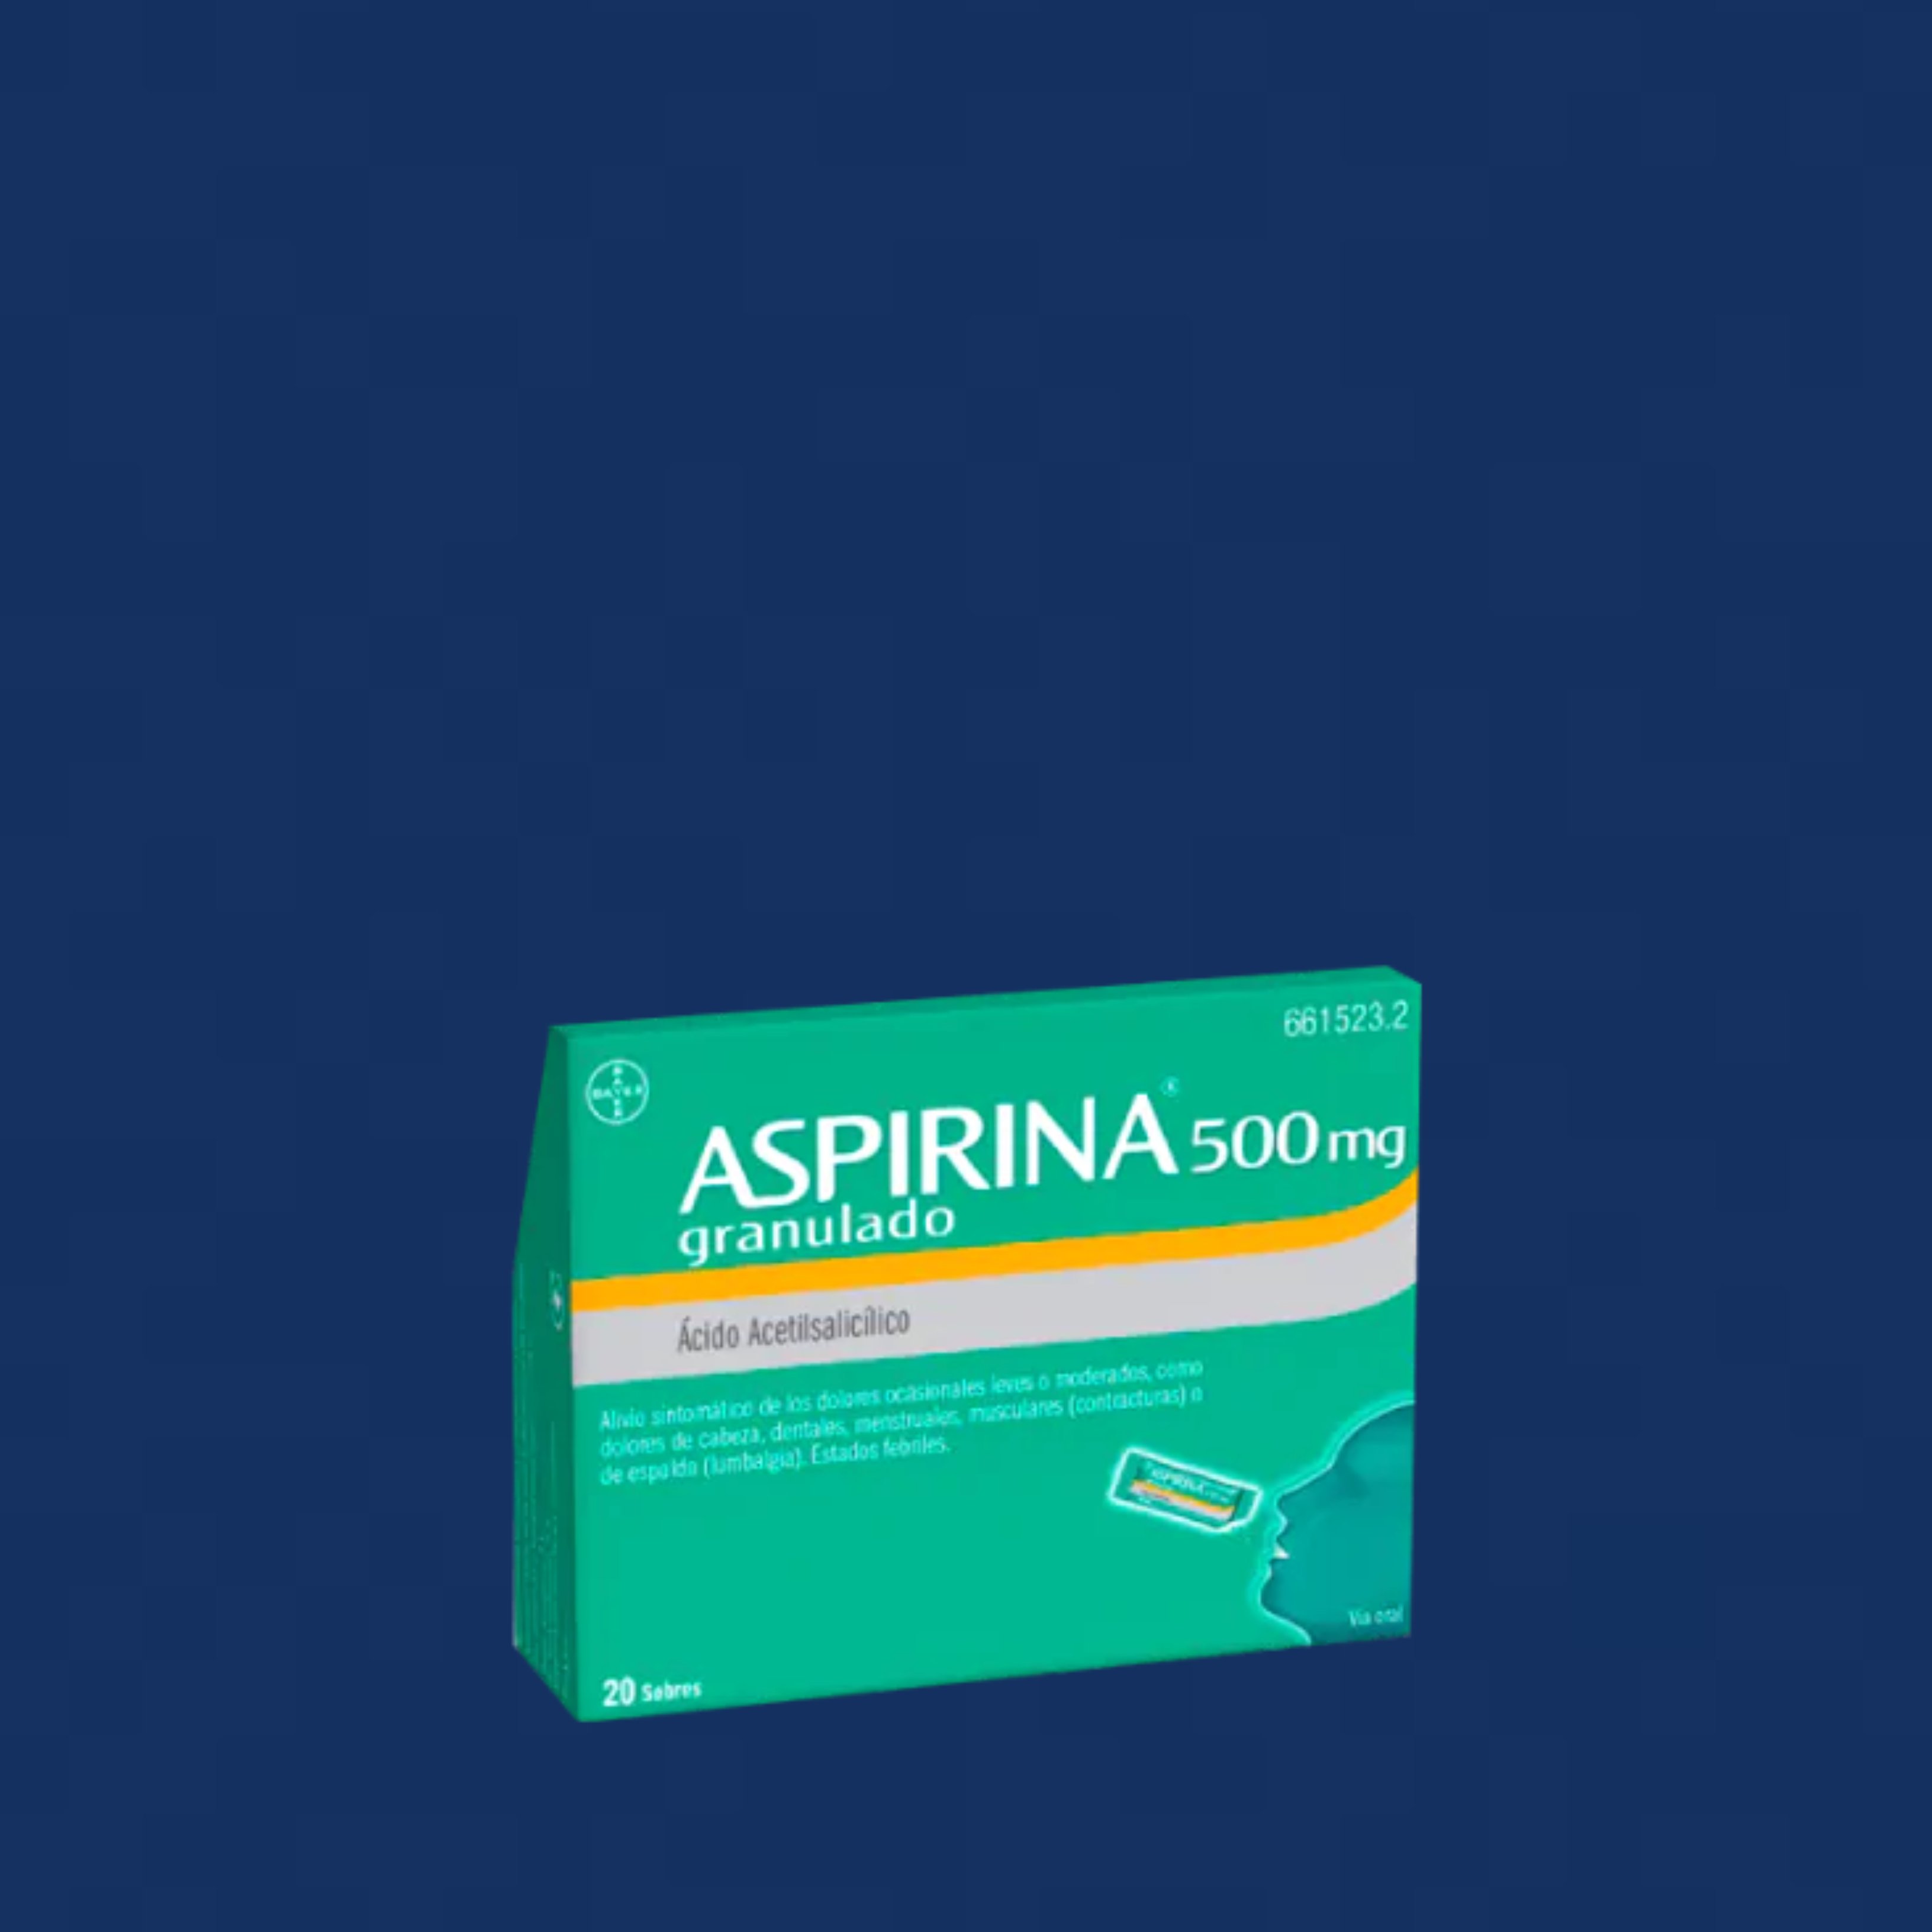 La aspirina previene de verdad la aparición de cáncer en el tracto digestivo